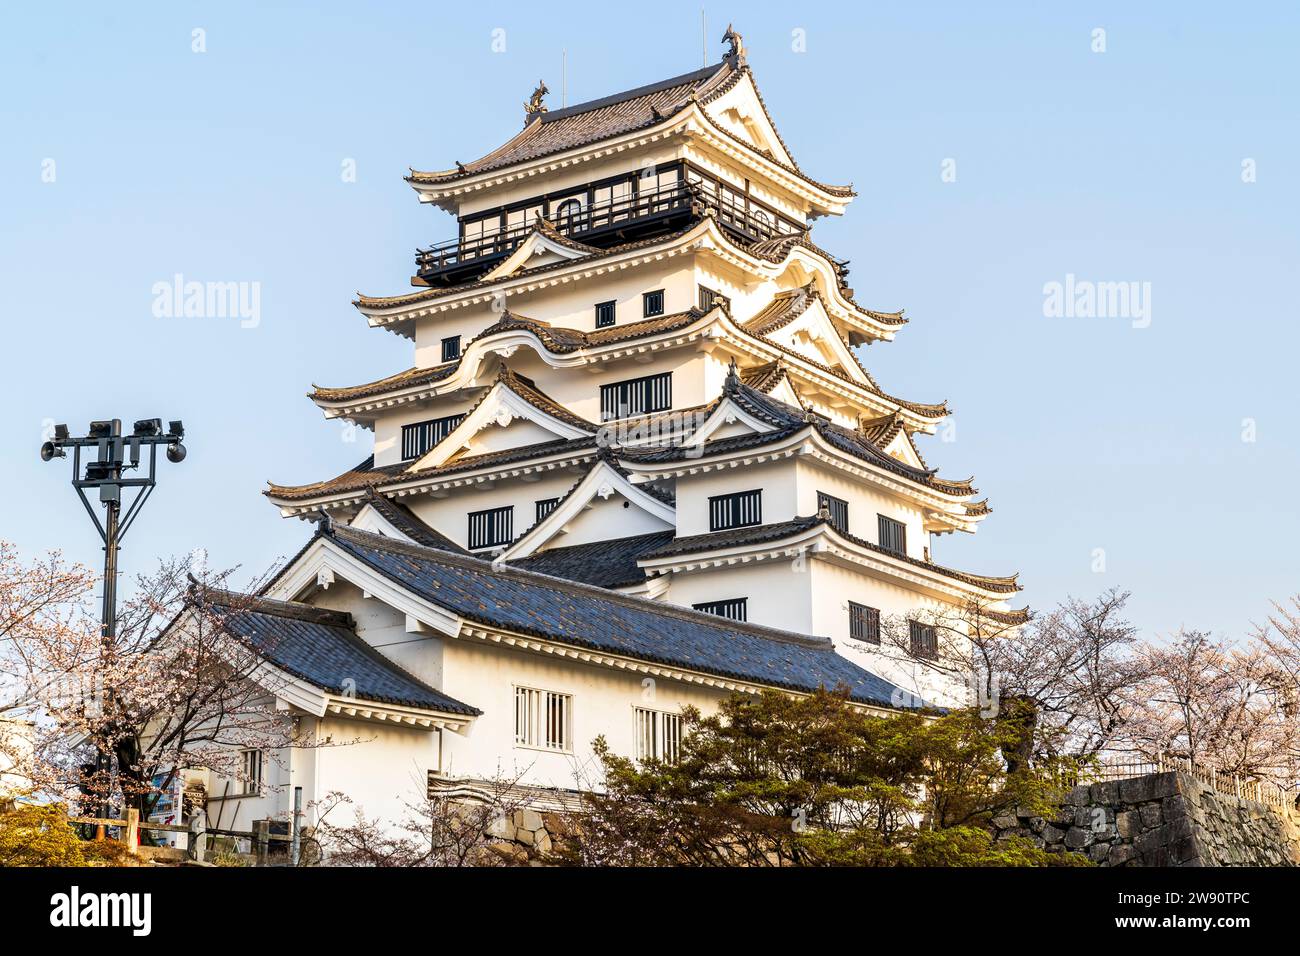 Château de Fukuyama, Japon. Les fleurs de cerisier et le château de style borogata blanc récemment restauré restent éclairés par le lever du soleil sur un ciel bleu clair. Banque D'Images